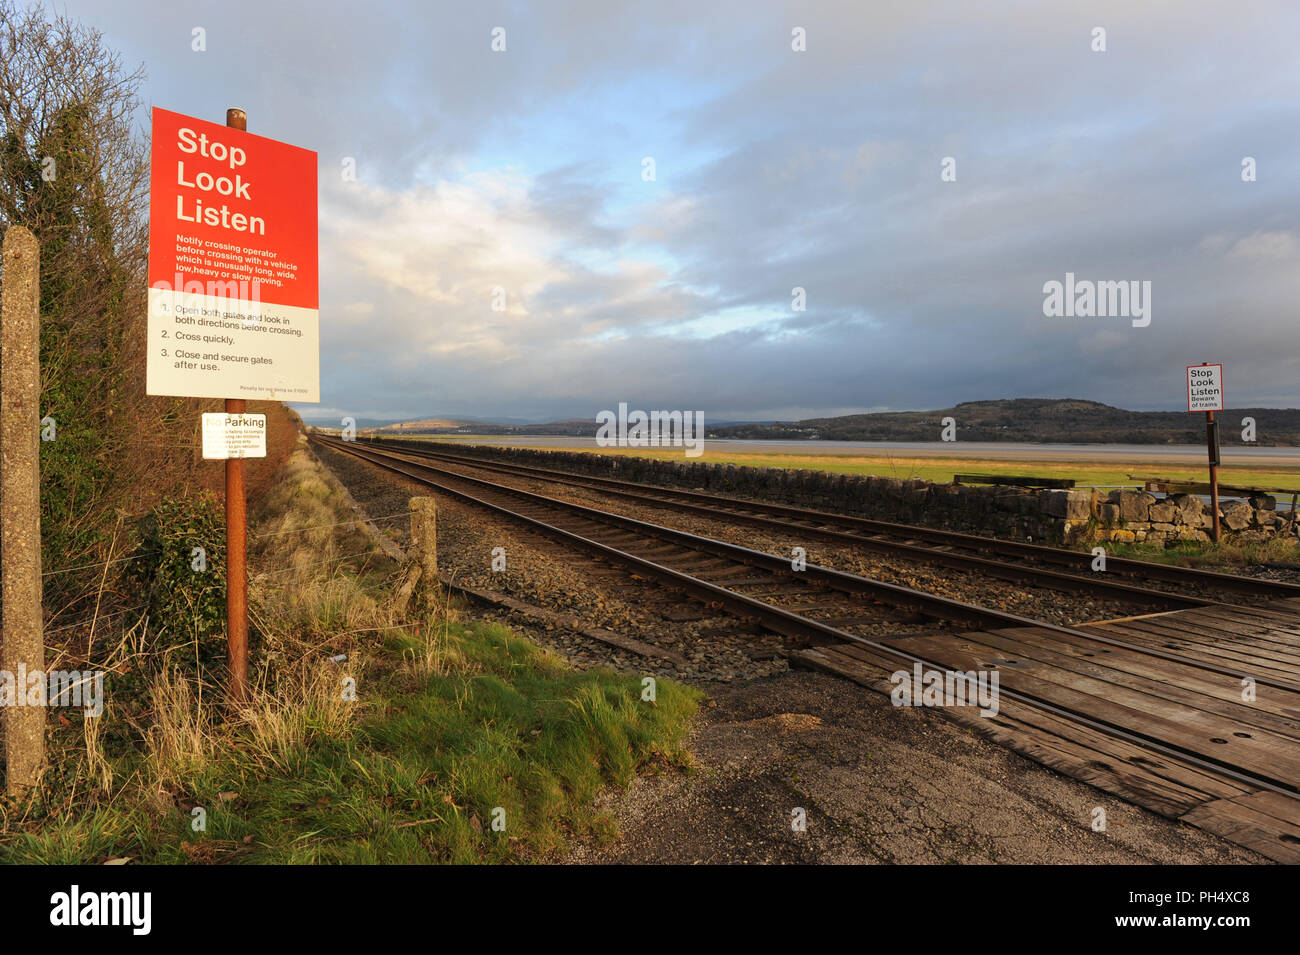 Arrêtez-vous, écoutez les panneaux sur le passage à niveau sans pilote, Grange-over-Sands. Angleterre, Royaume-Uni Banque D'Images